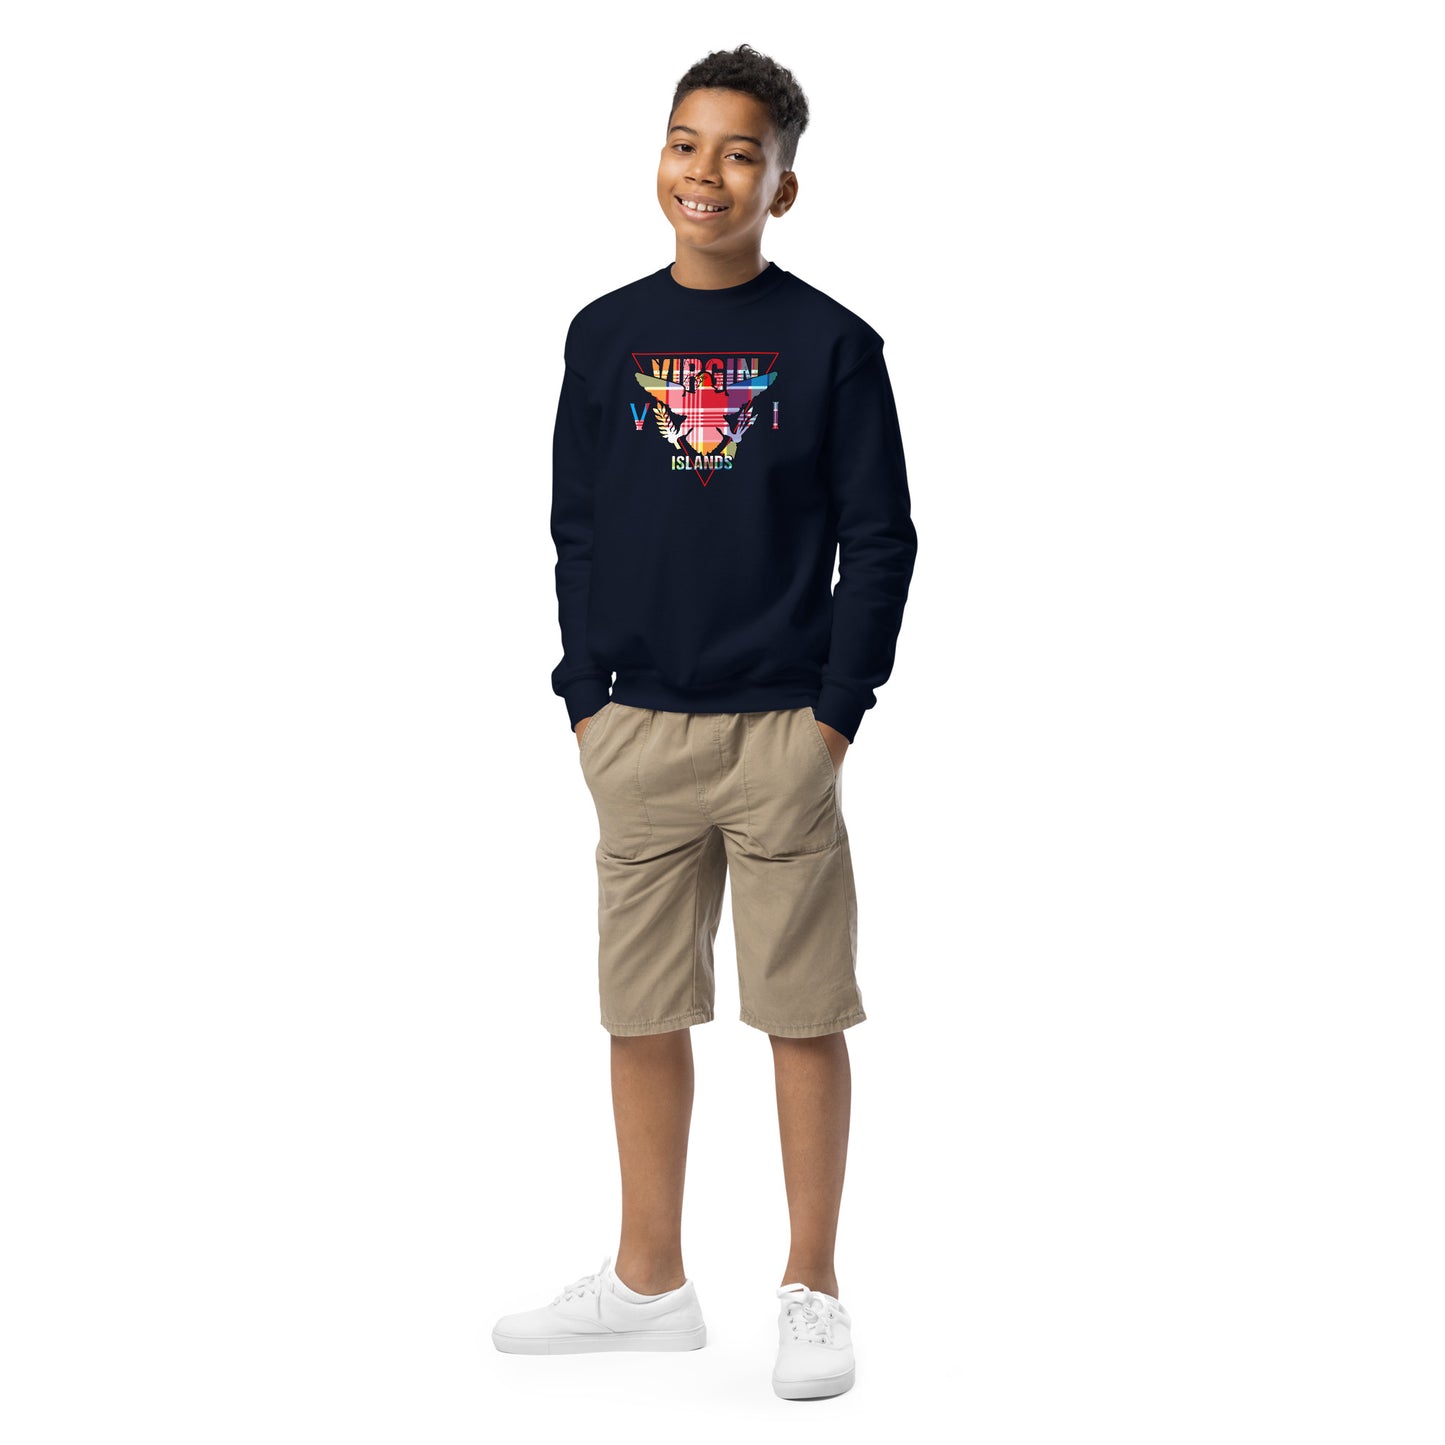 Youth hero crewneck sweatshirt